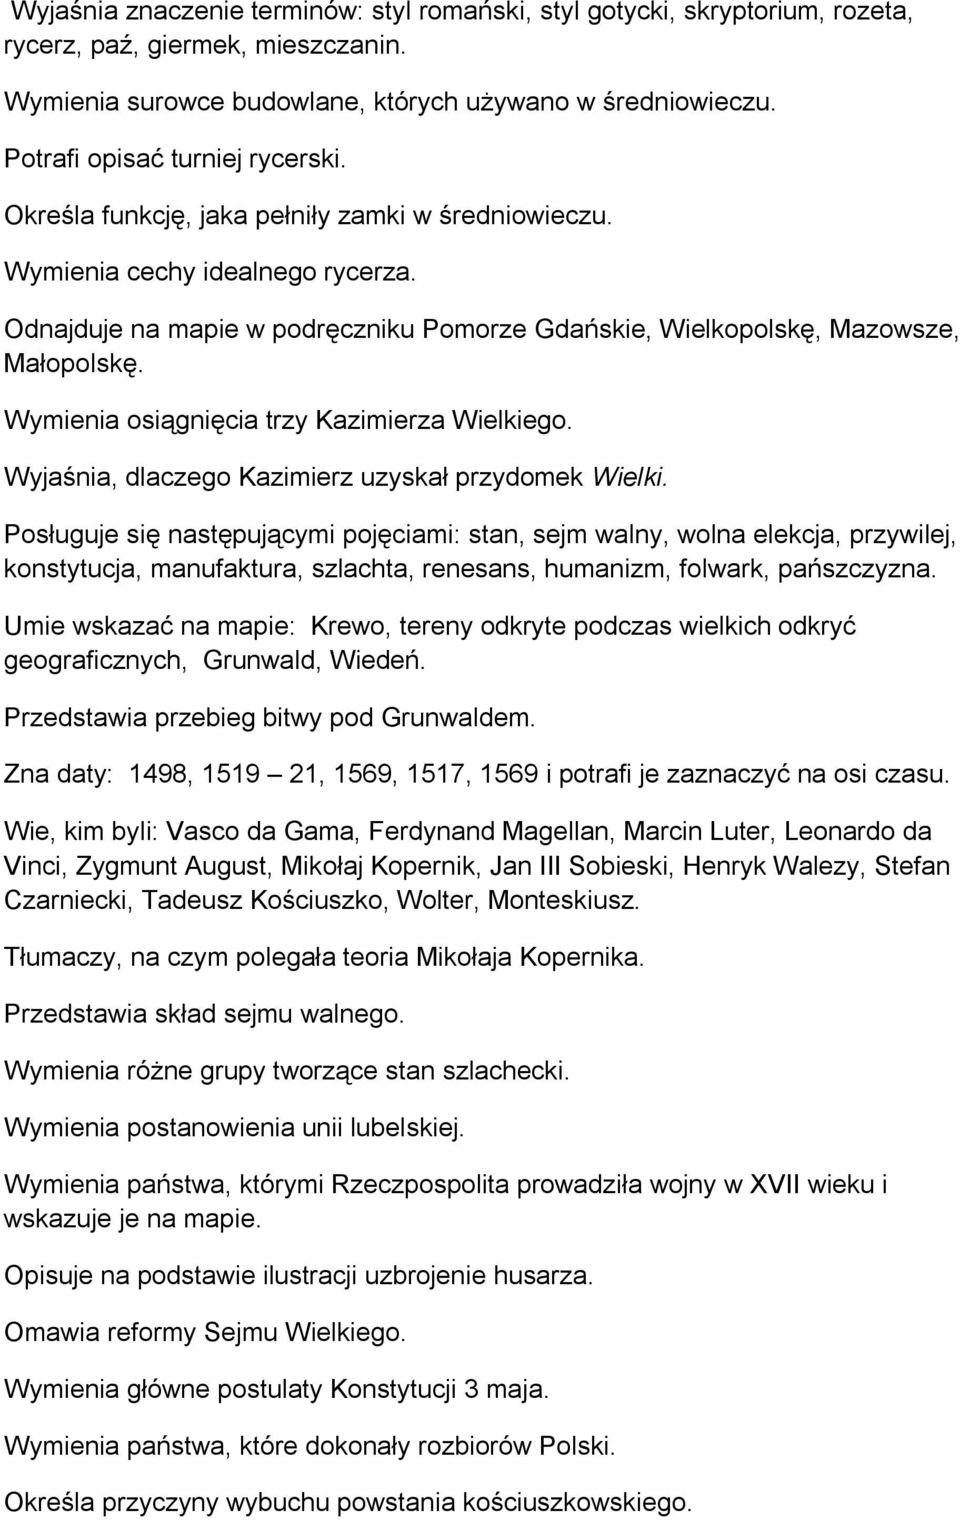 Odnajduje na mapie w podręczniku Pomorze Gdańskie, Wielkopolskę, Mazowsze, Małopolskę. Wymienia osiągnięcia trzy Kazimierza Wielkiego. Wyjaśnia, dlaczego Kazimierz uzyskał przydomek Wielki.